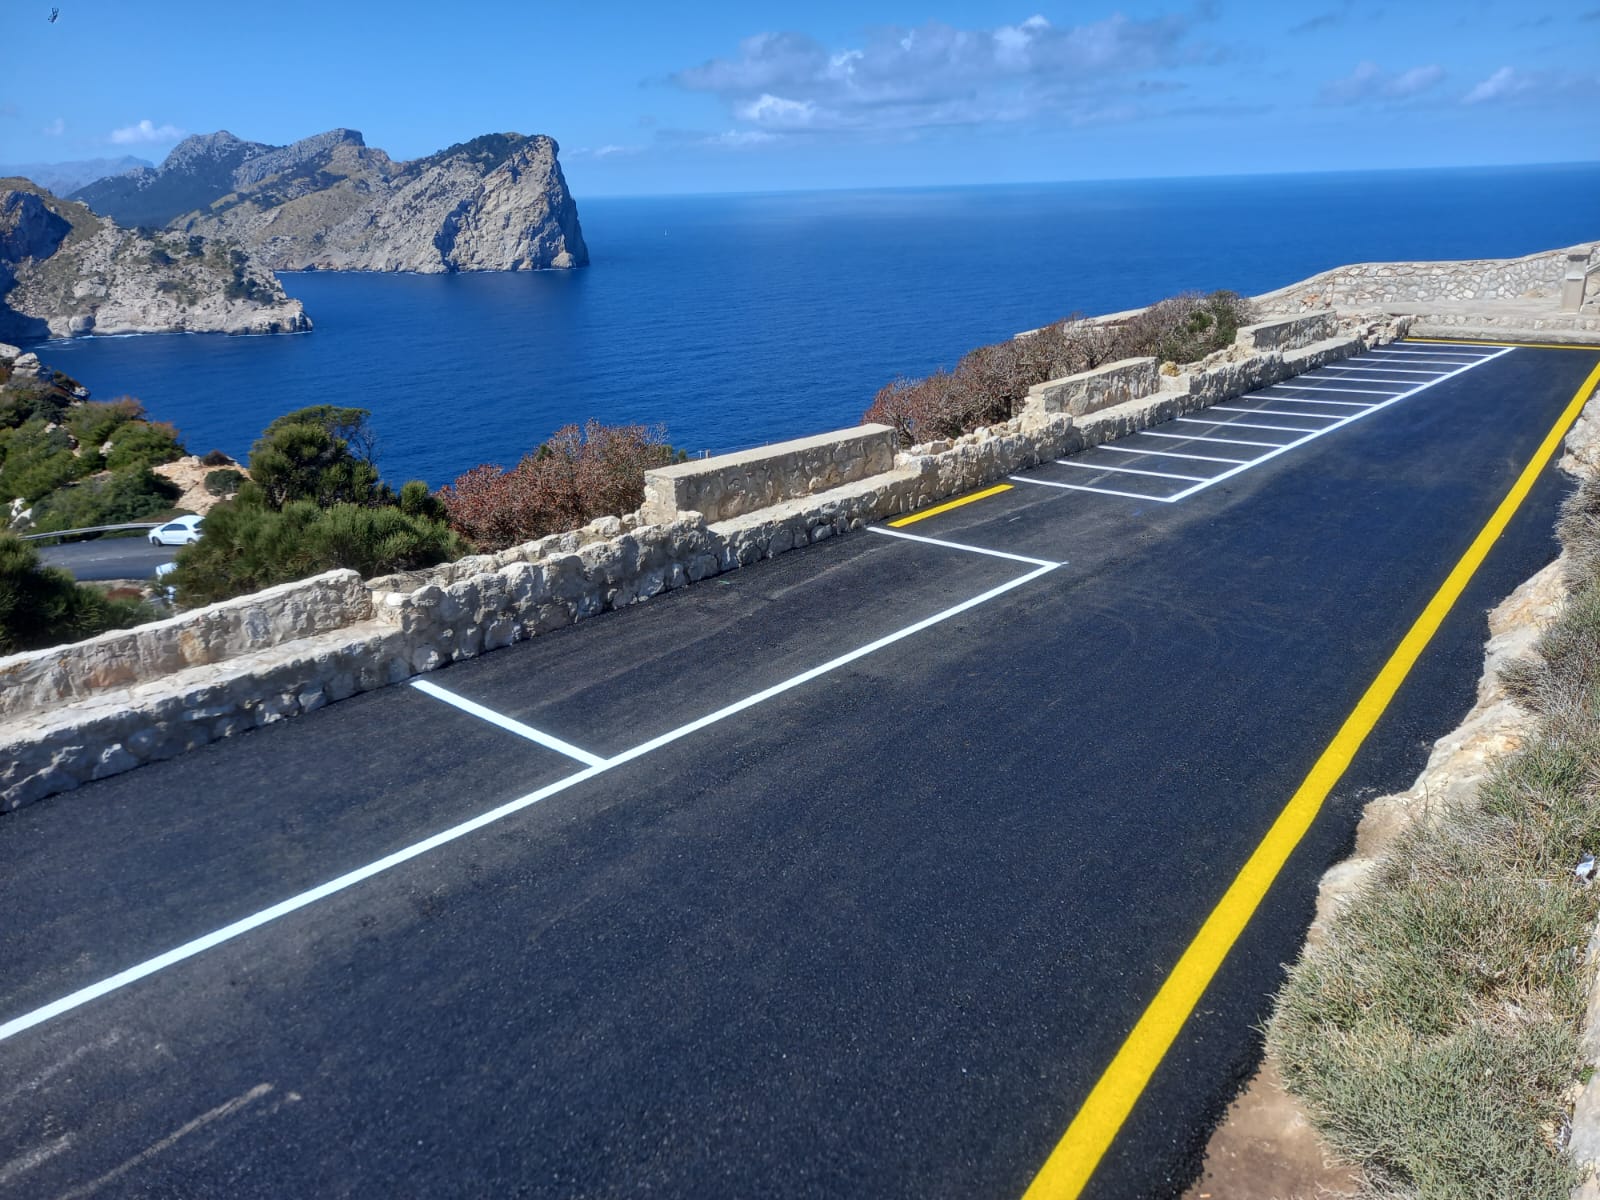 Finalizan las obras de la carretera del faro de Formentor